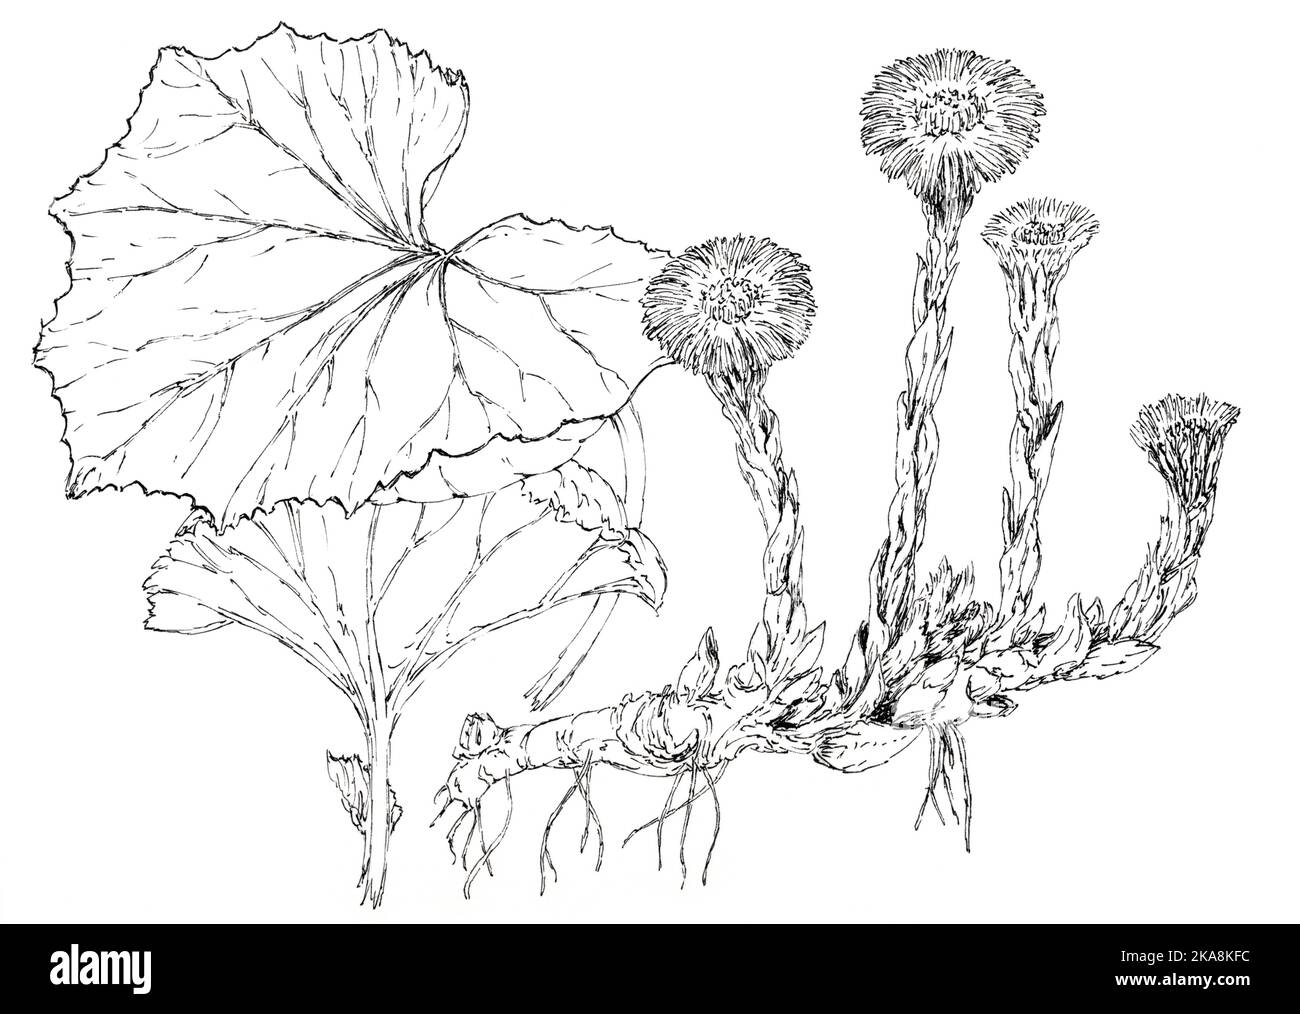 Kolchfußpflanze (Tussilago fara) botanische Zeichnung. Tinte auf Papier. Stockfoto